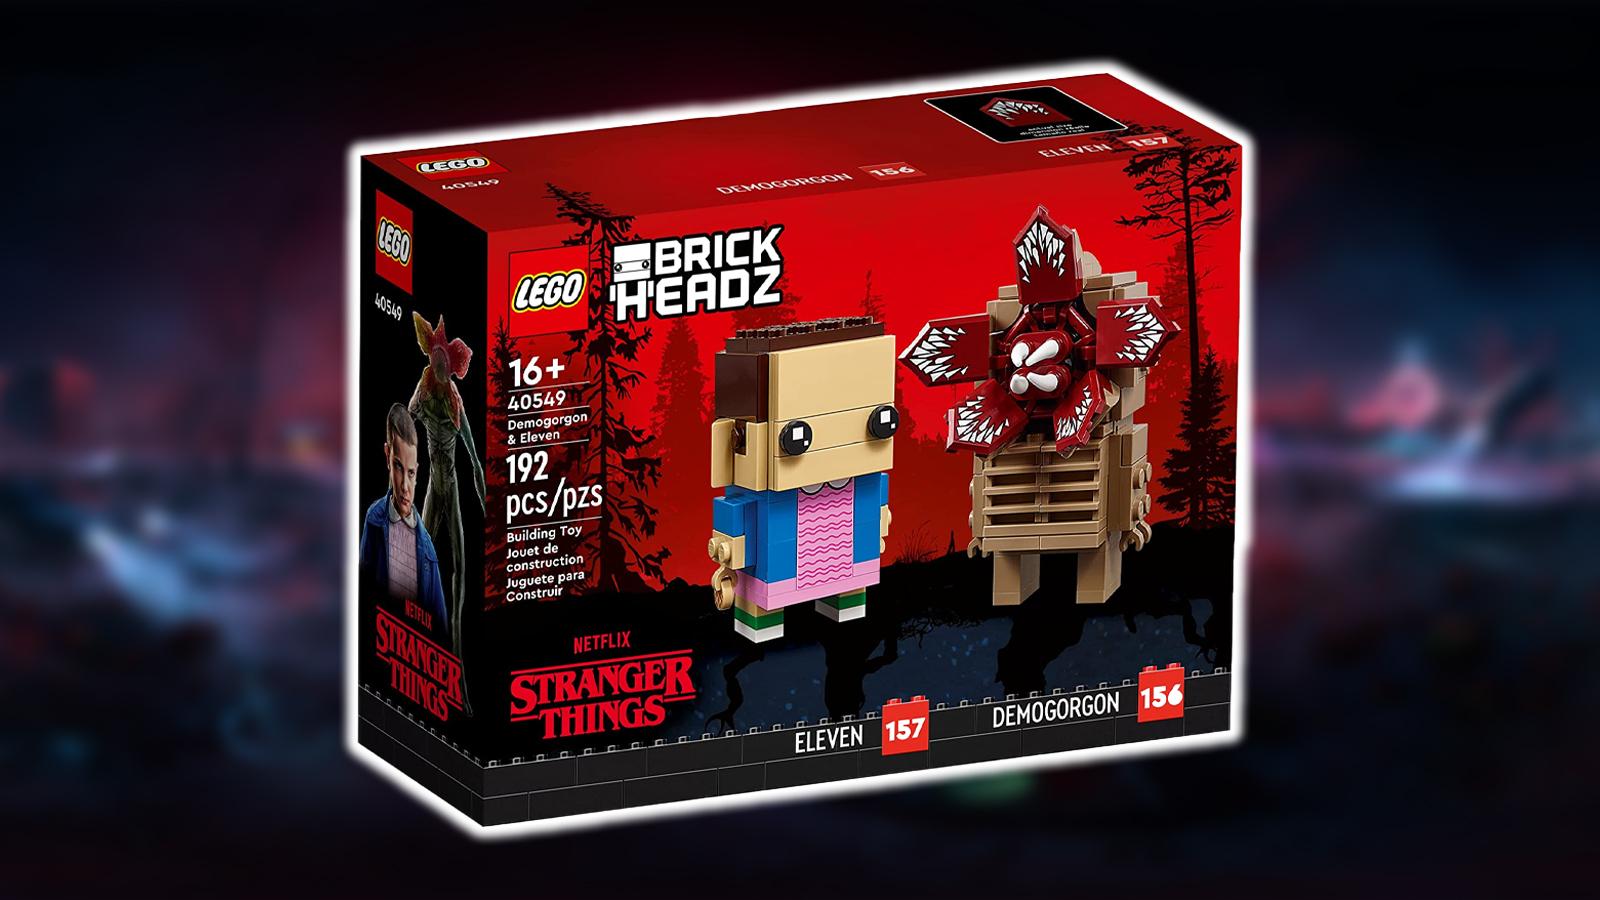 cover art for the Stanger Things-themed LEGO builder kit